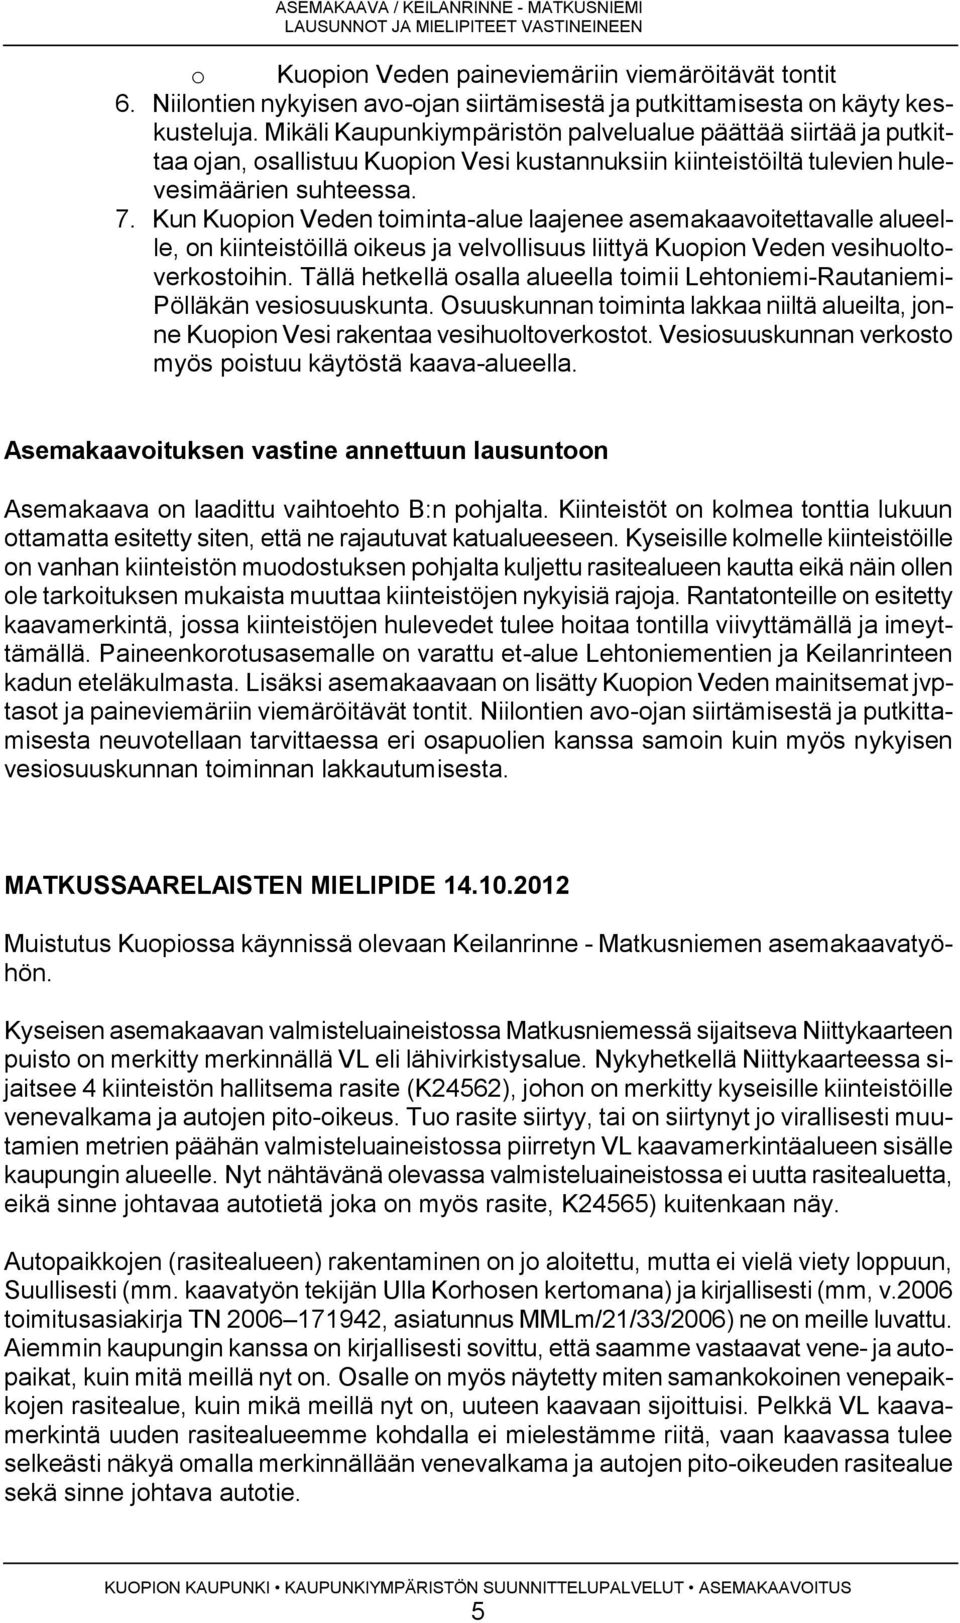 Mikäli Kaupunkiympäristön palvelualue päättää siirtää ja putkittaa ojan, osallistuu Kuopion Vesi kustannuksiin kiinteistöiltä tulevien hulevesimäärien suhteessa. 7.